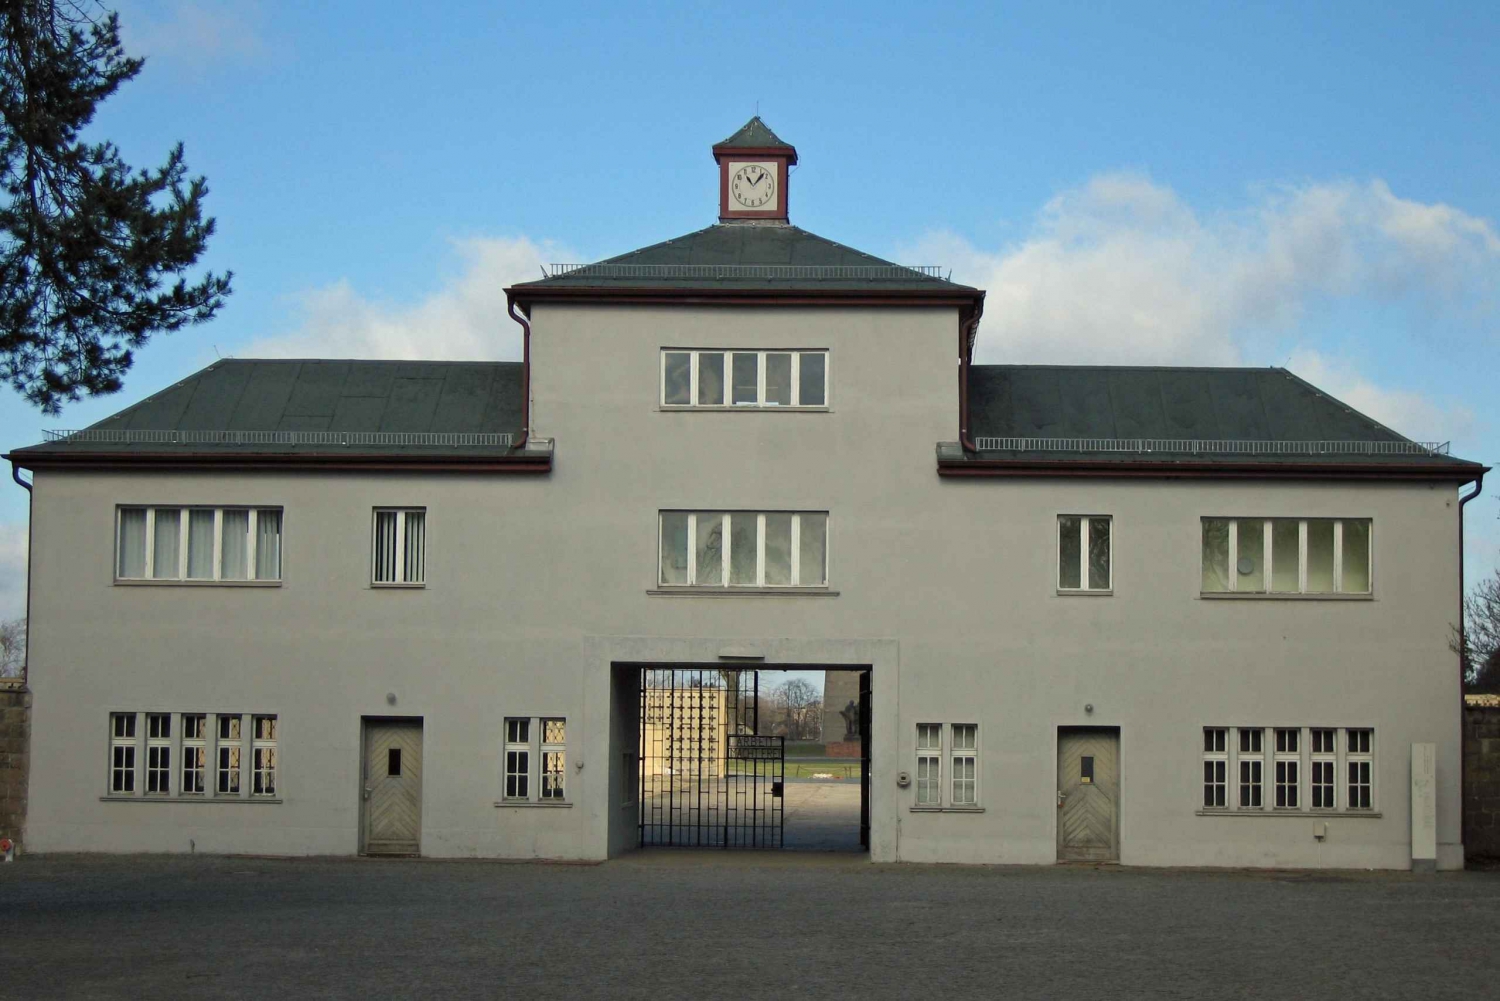 Tour al campo de concentración de Sachsenhausen